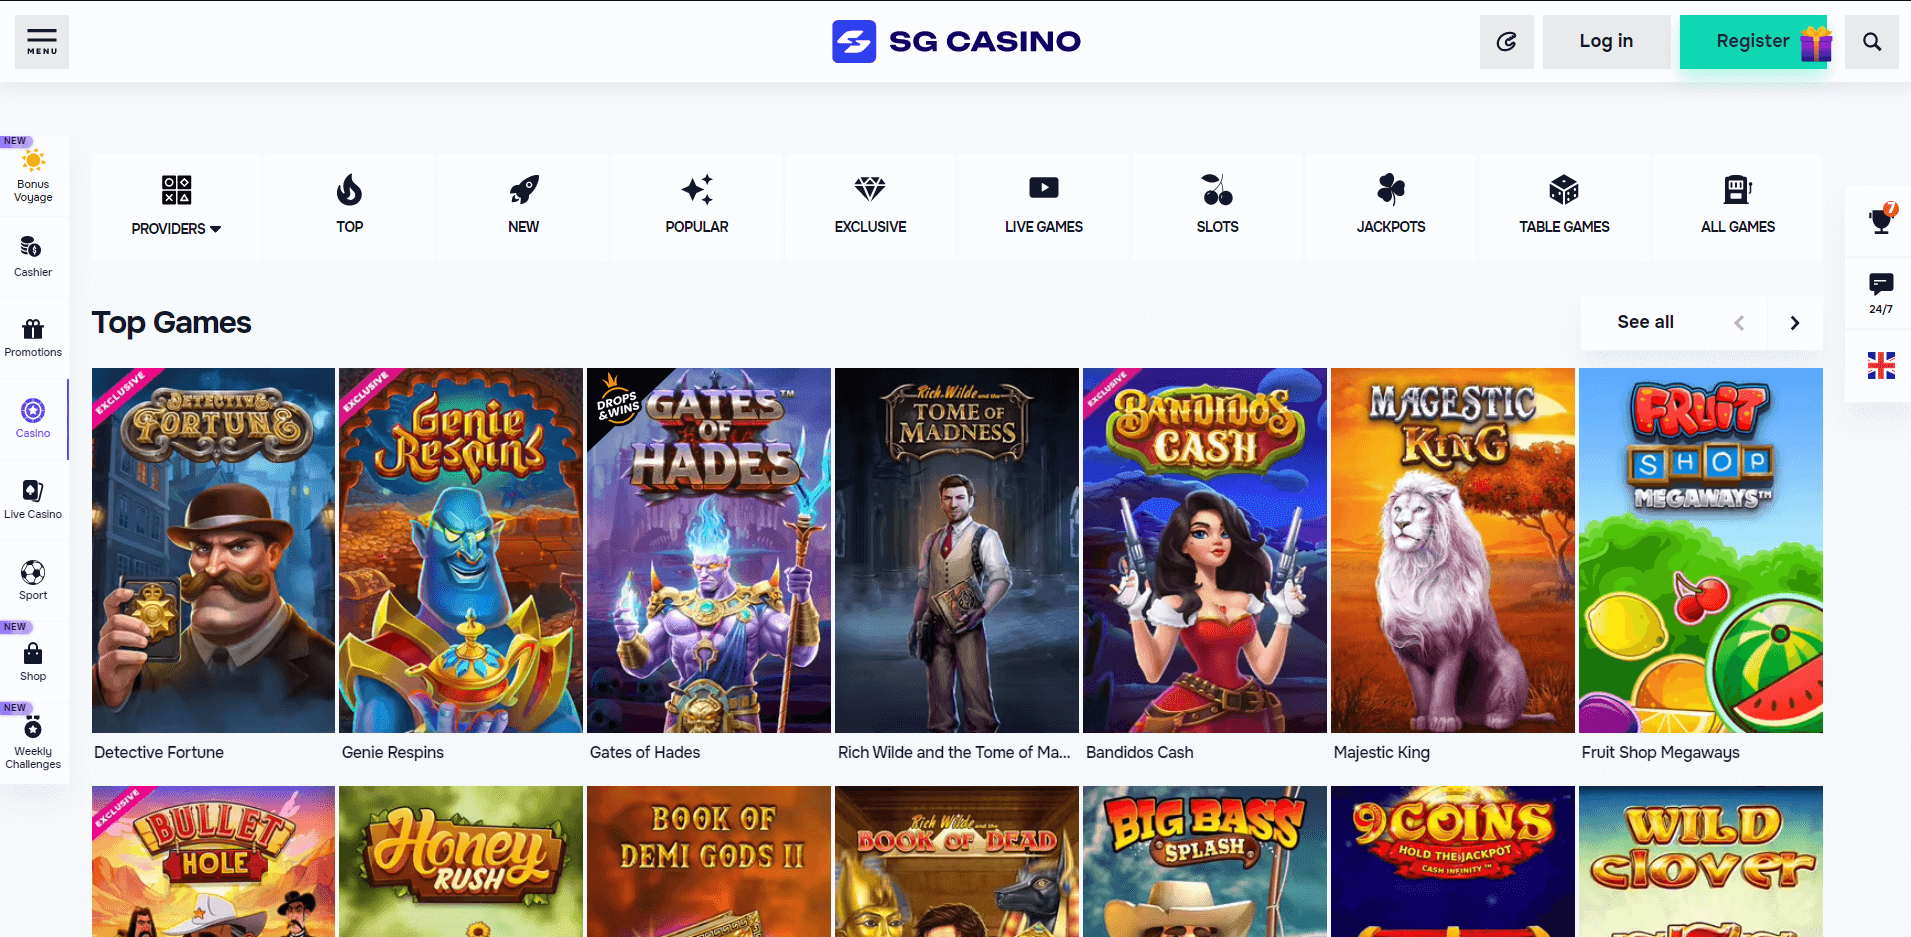 Casino games SGcasino